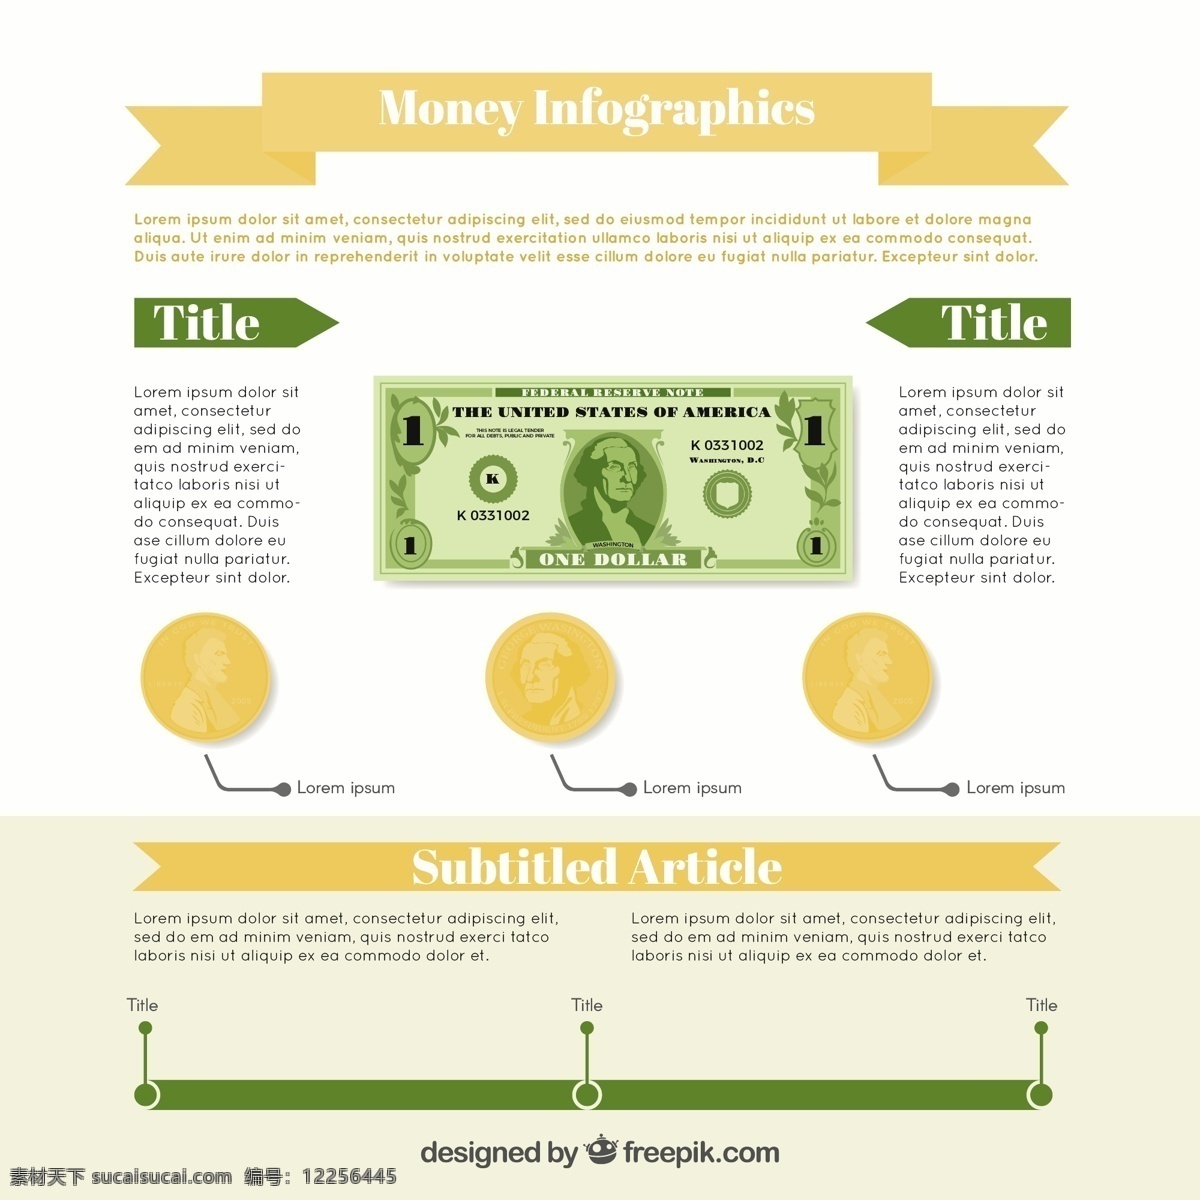 货币 数据 图表 模板 绿色 棕色 细节 业务 资金 图形 色彩 平面 过程图表模板 金融 银行 信息 资讯 平面设计 商业图表